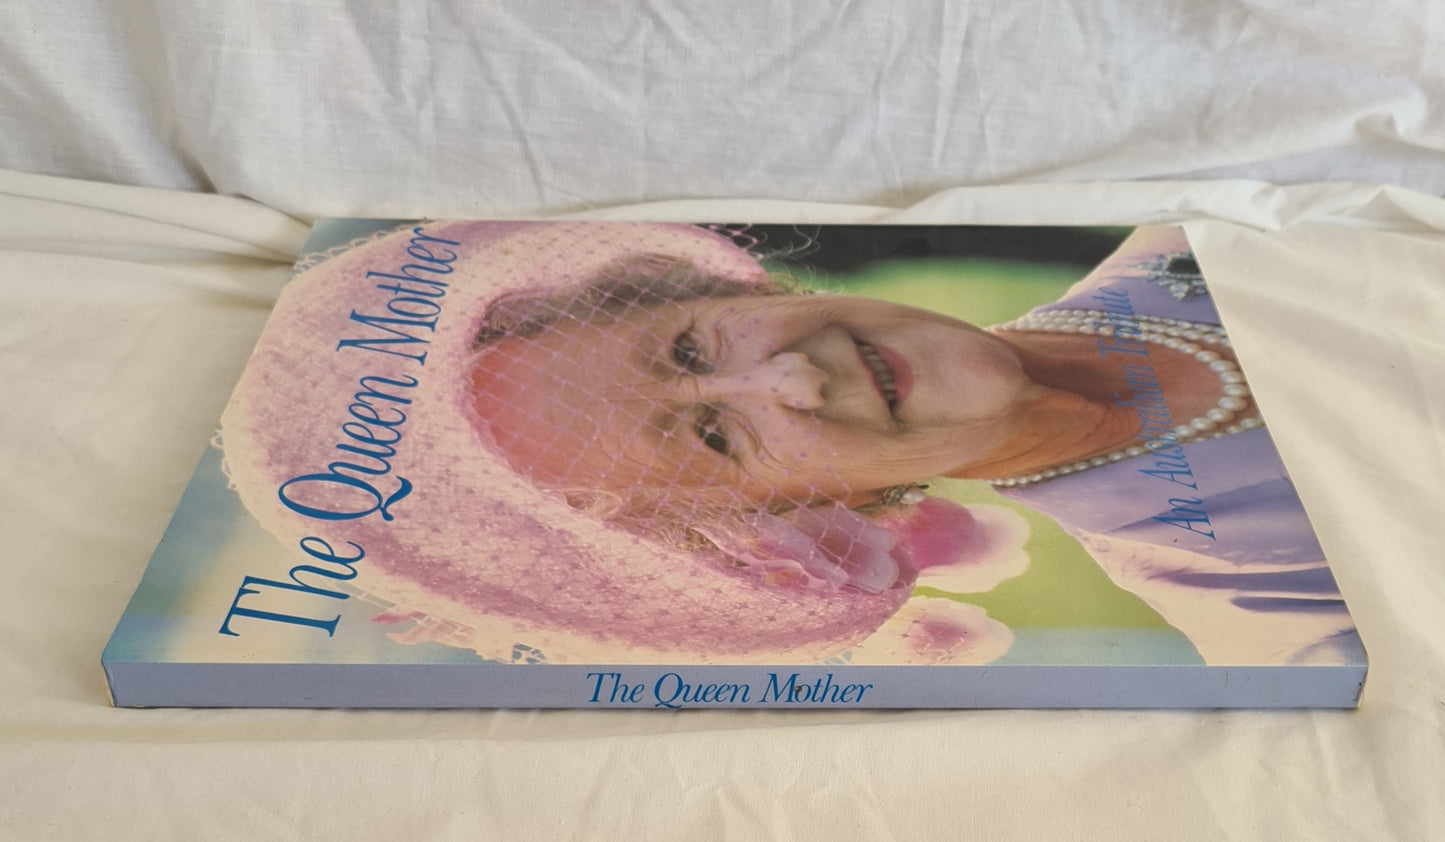 The Queen Mother: An Australian Tribute by Julie Gorrick